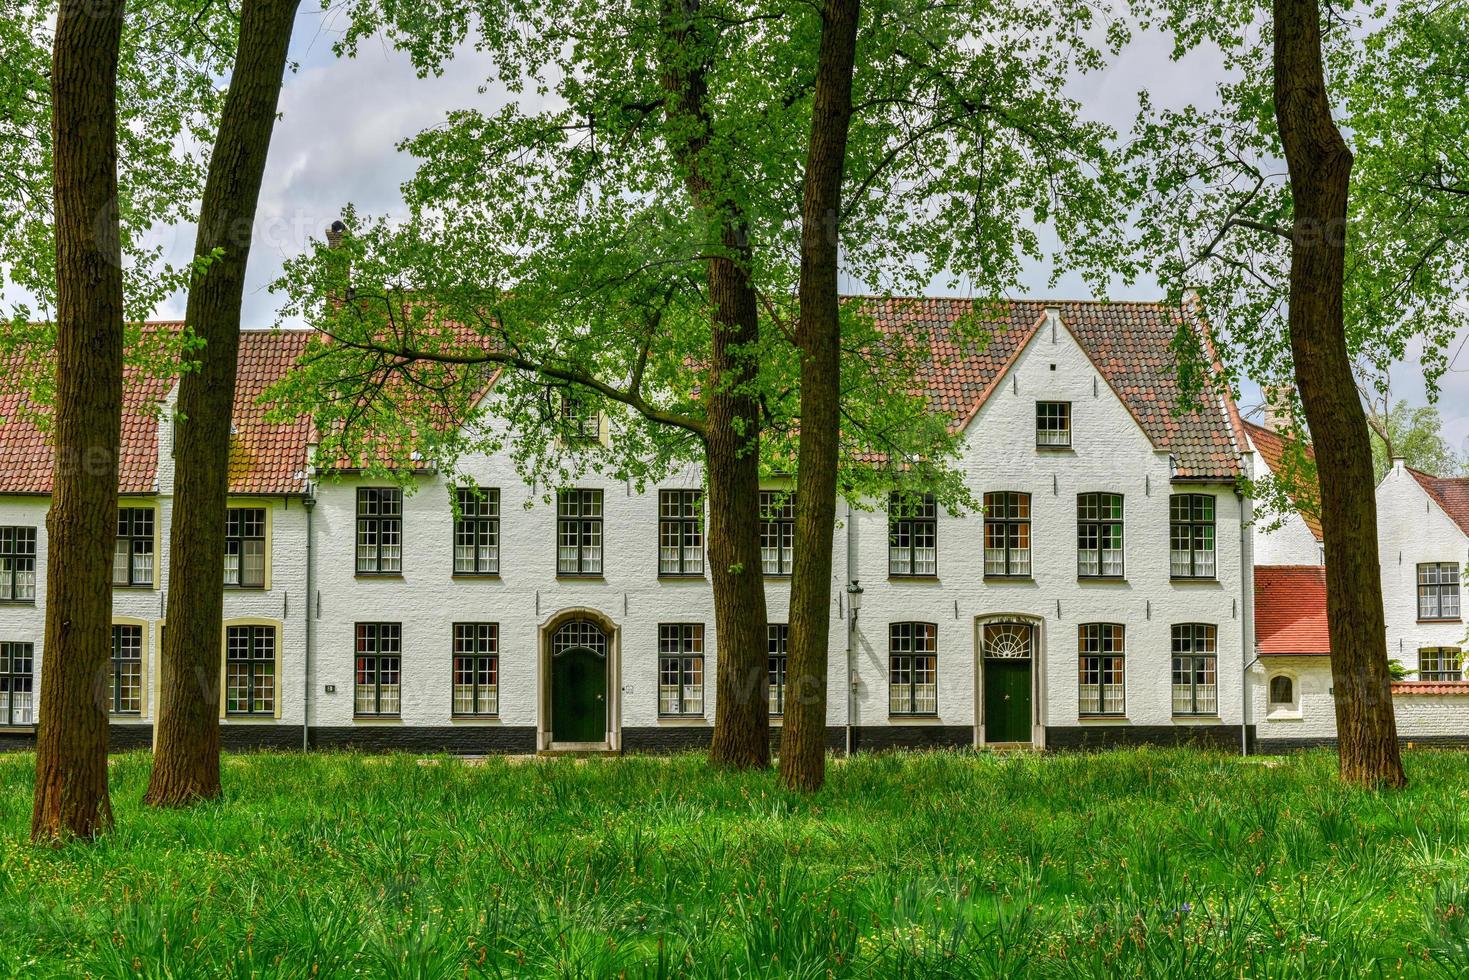 casas blancas medievales en el beaterio principesco begijnhof ten wijngaerde en brujas, bélgica. foto